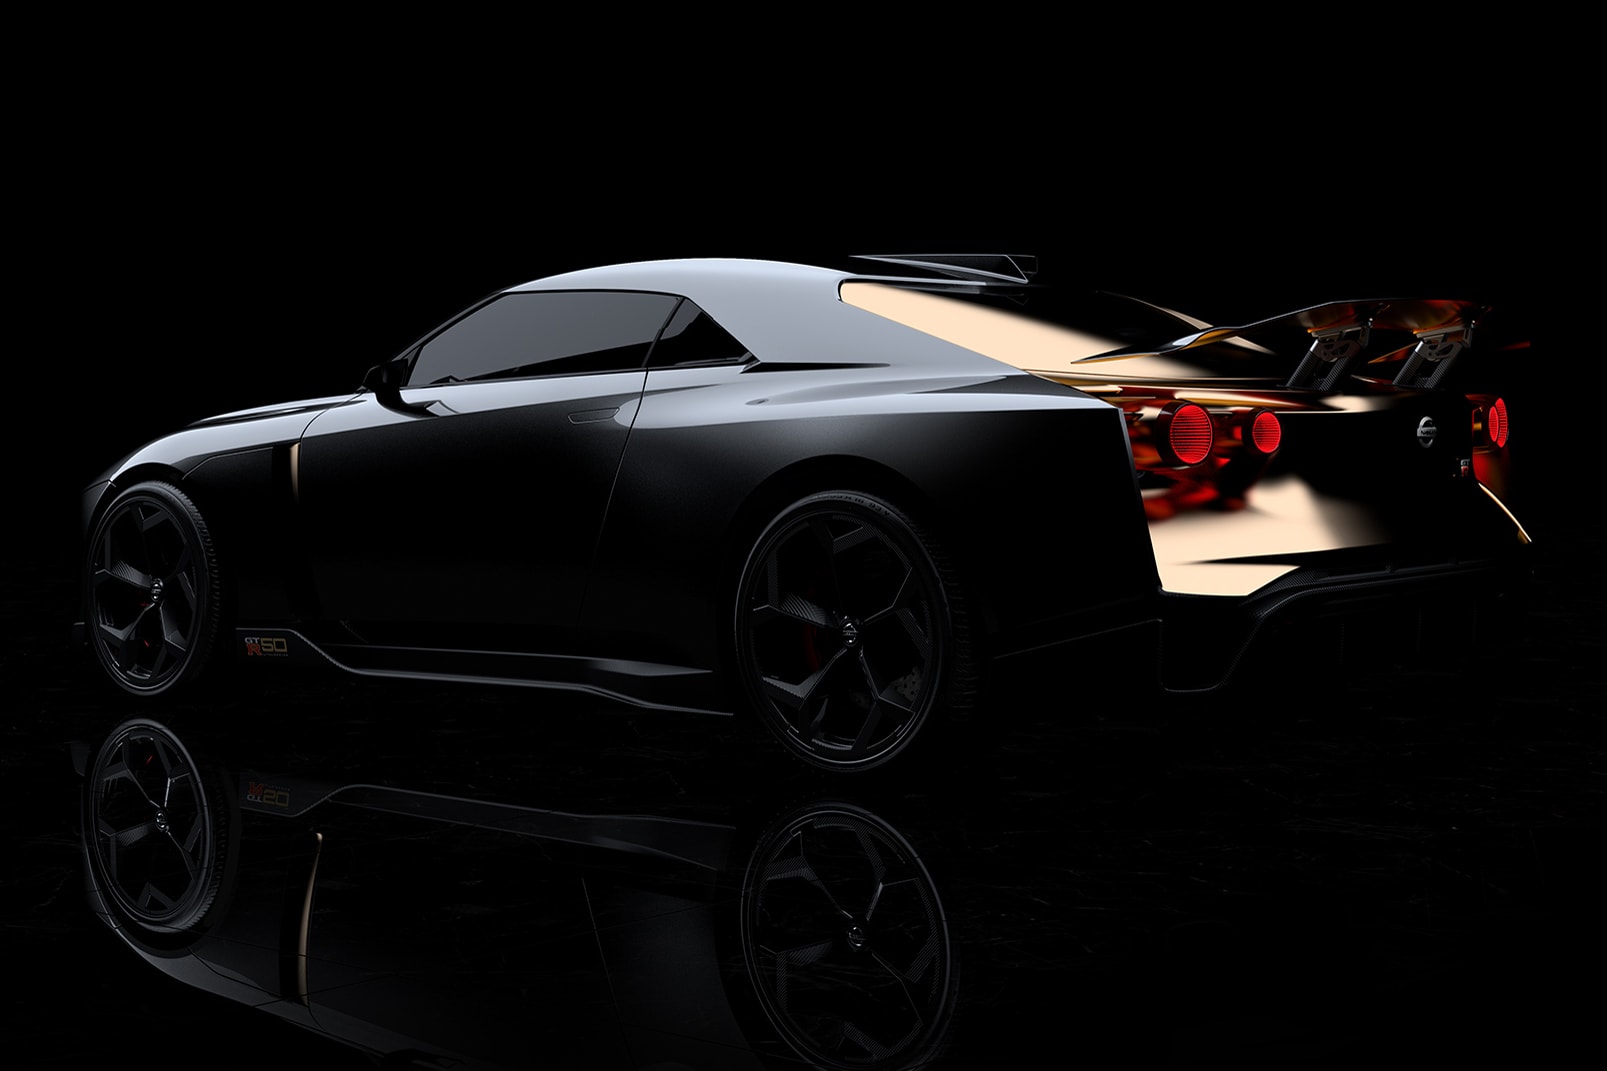 日產 Nissan 與 Italdesign 攜手打造 GT-R50 跑車